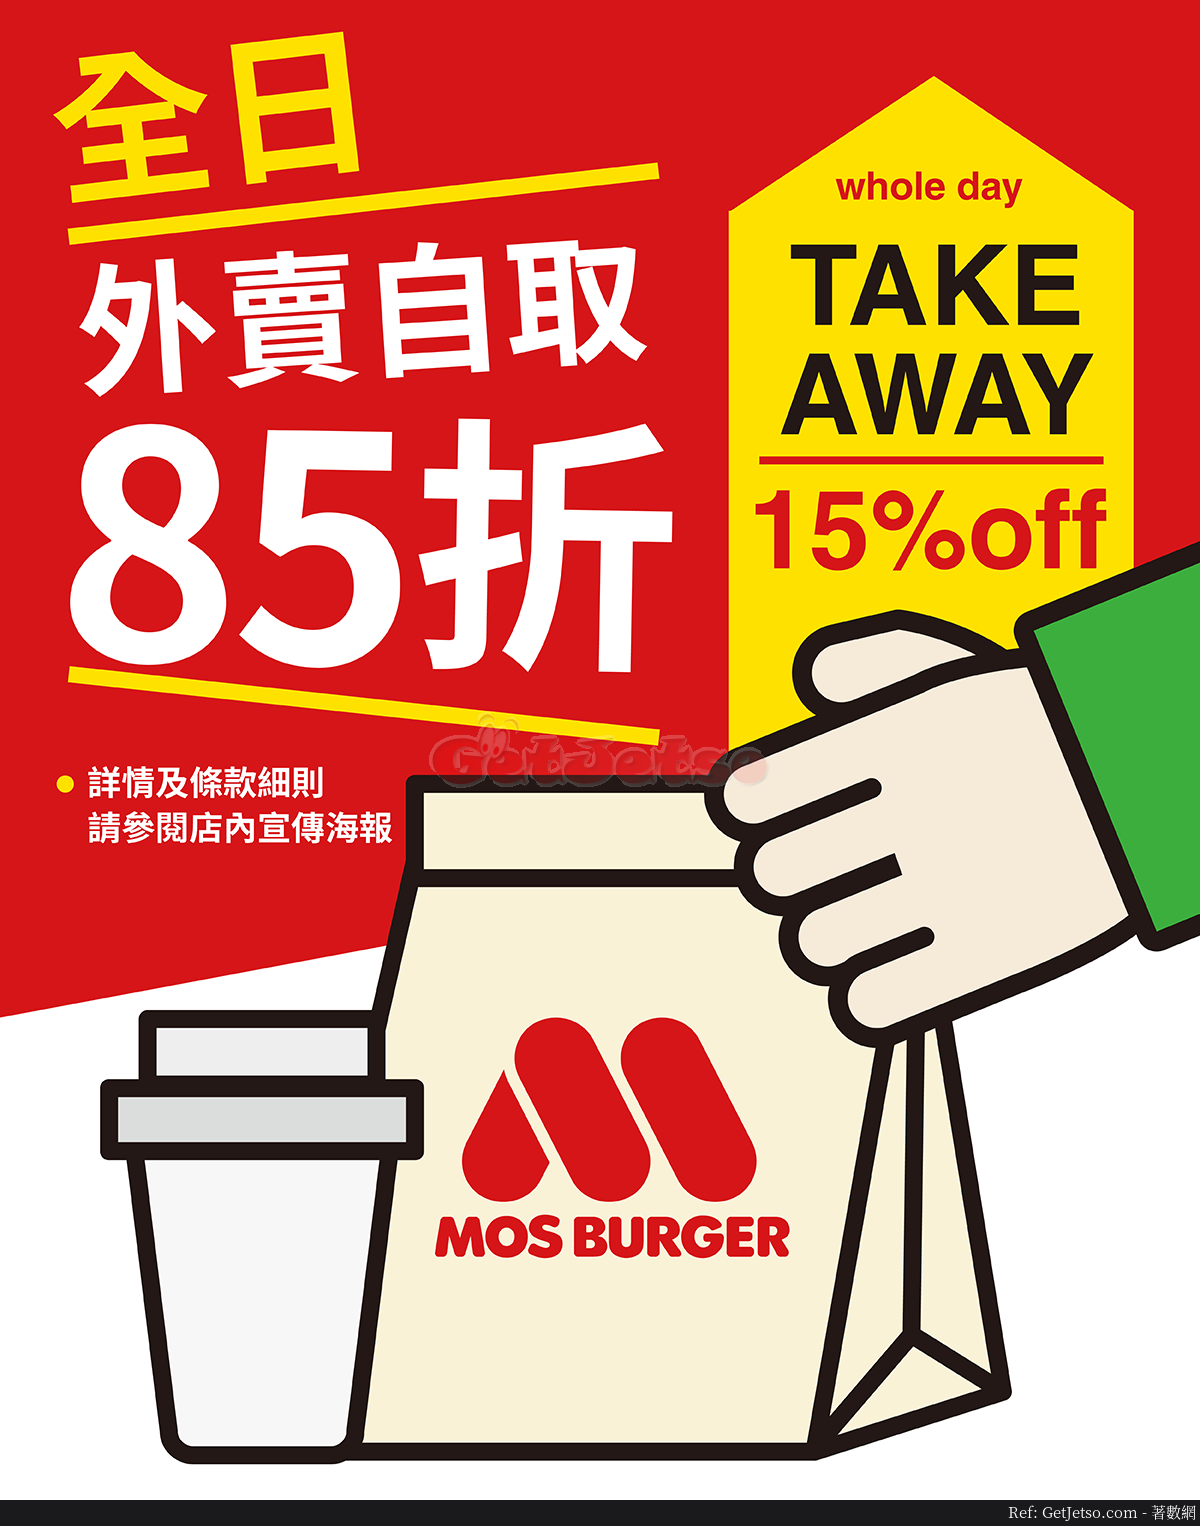 MOS Burger 全日外賣自取85折優惠(20年7月29日起)圖片1